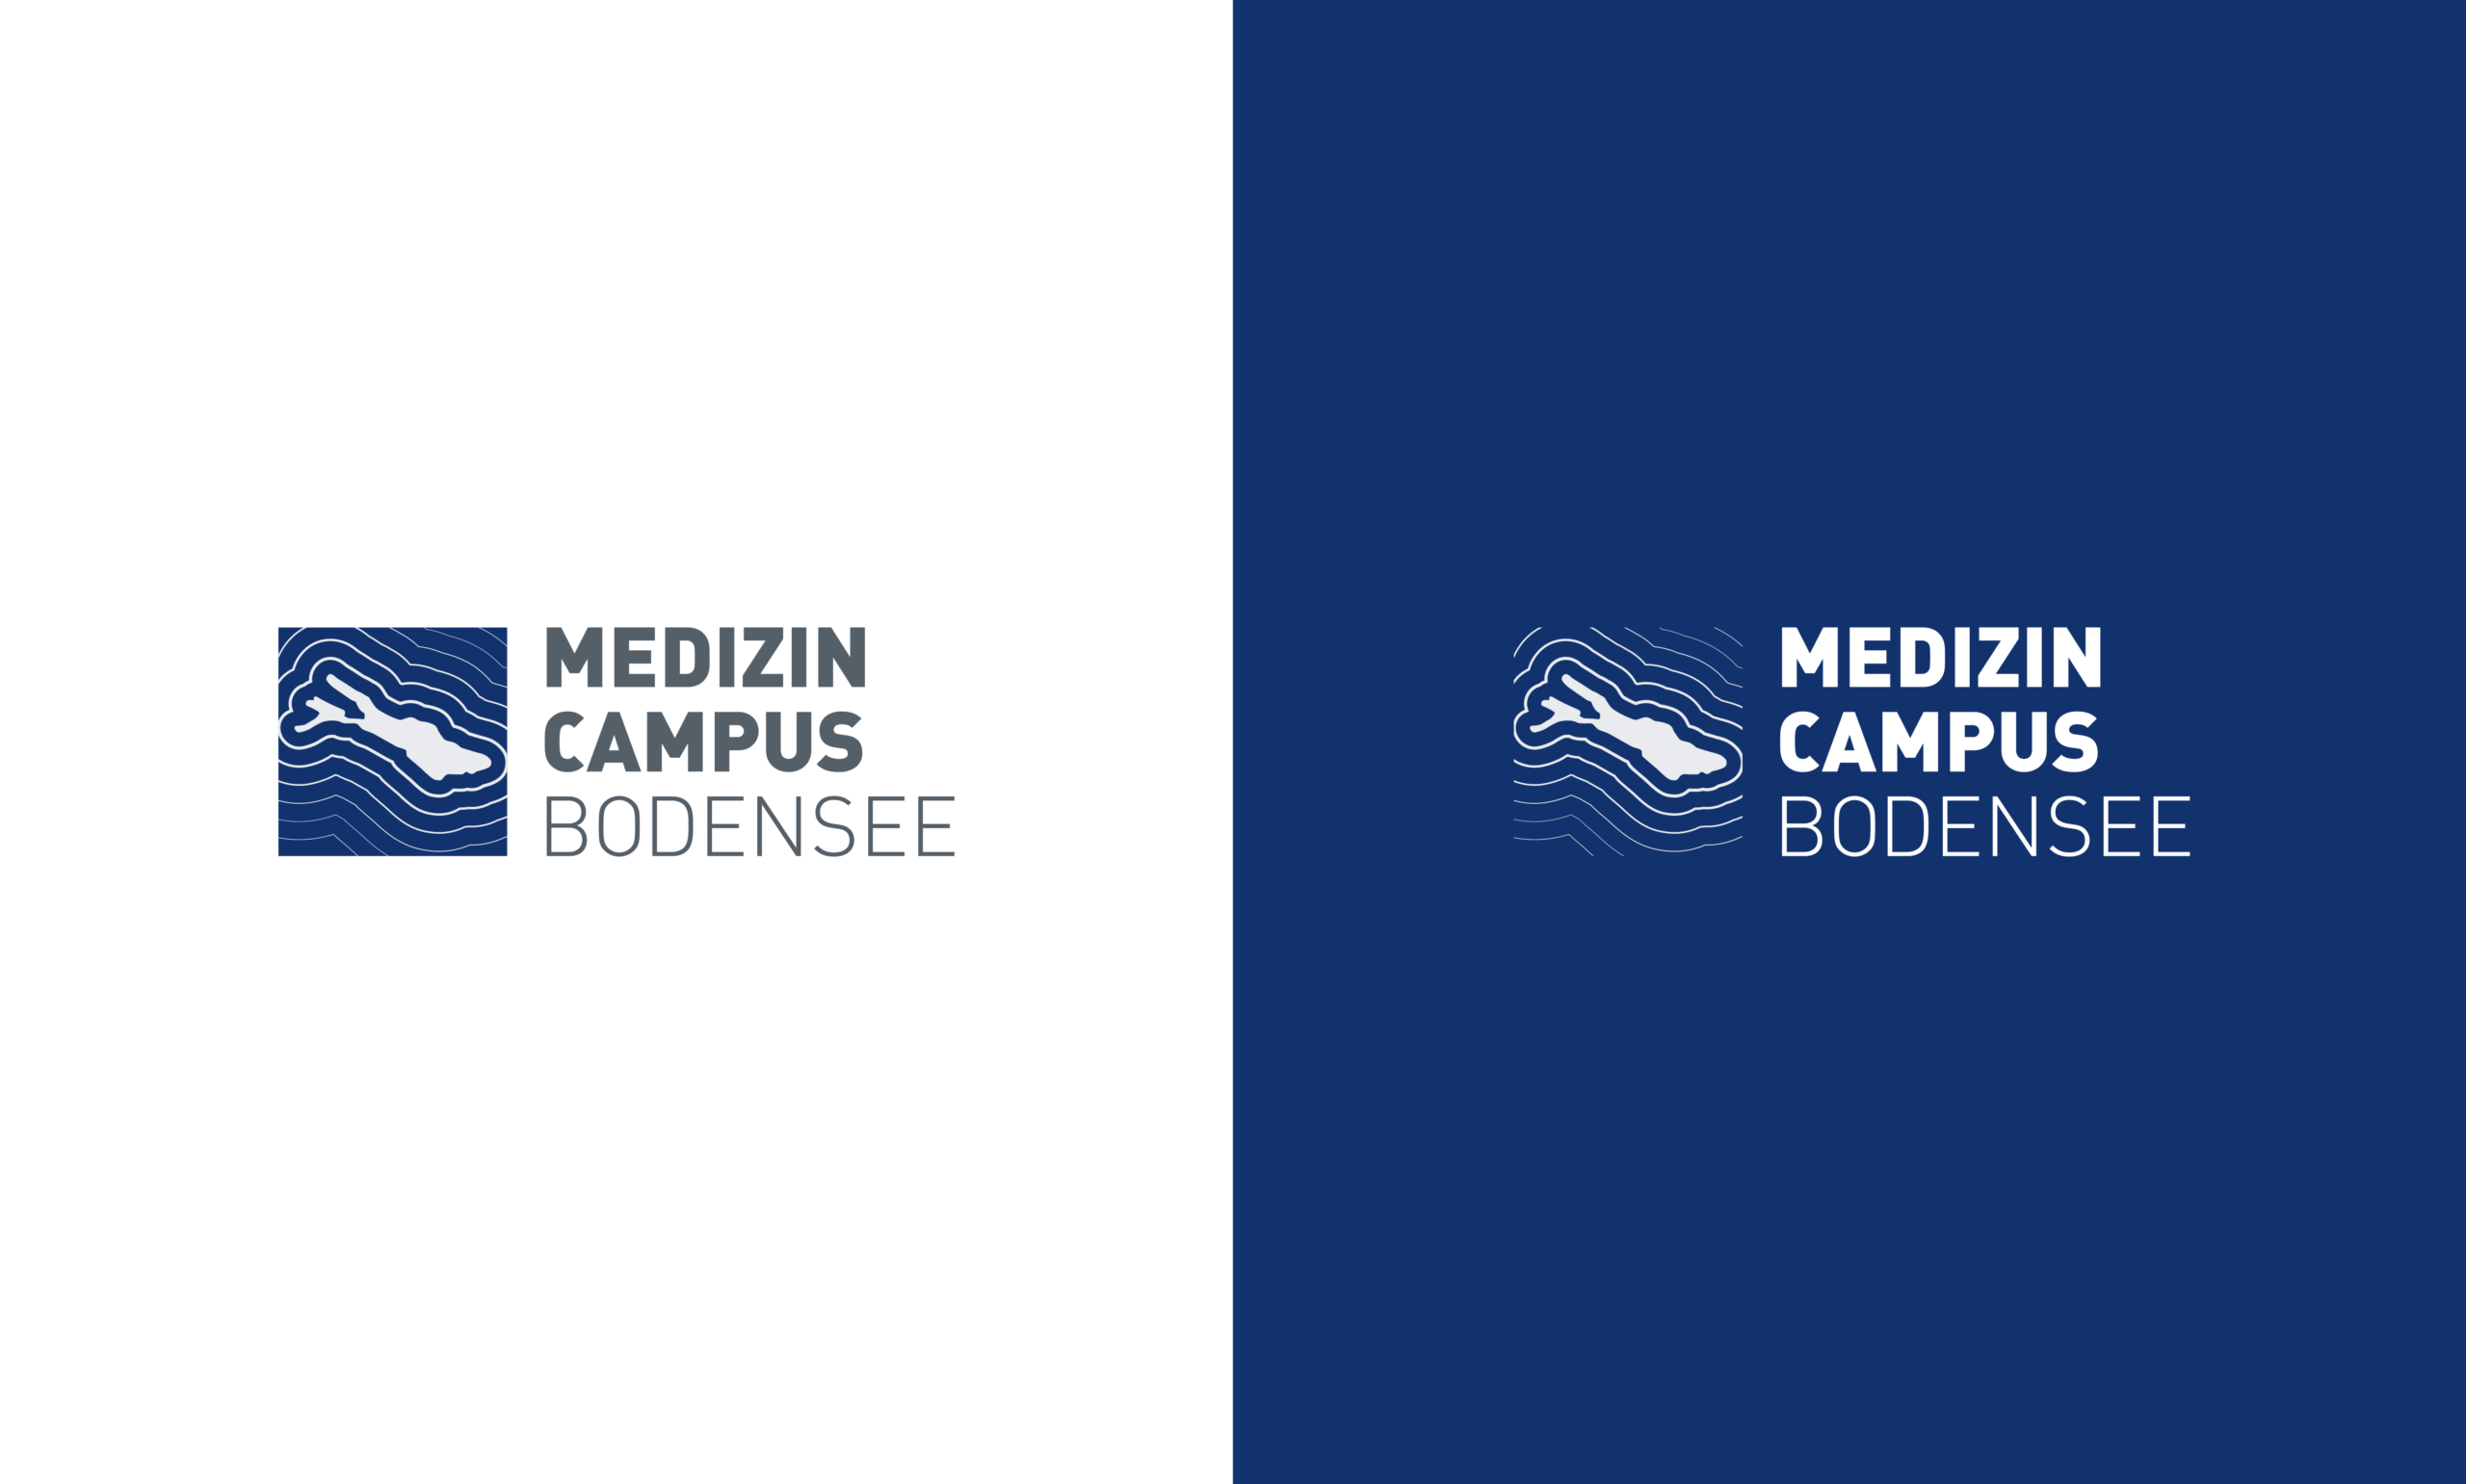 Medizin Campus Bodensee Markenarchitektur